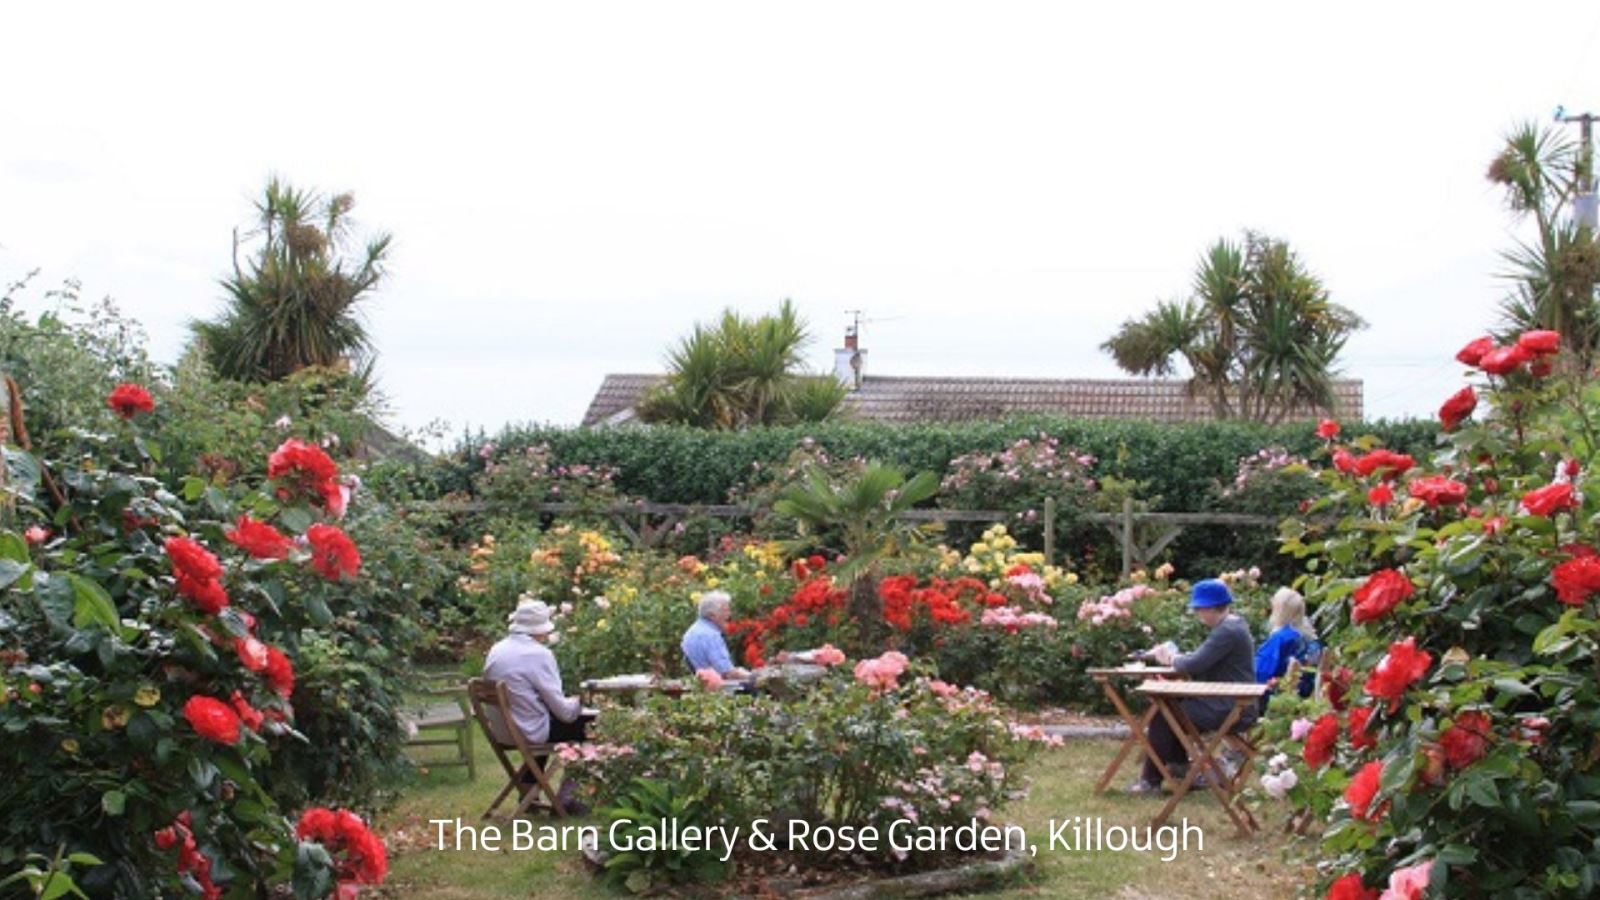 The Barn Gallery & Rose Garden, Killough